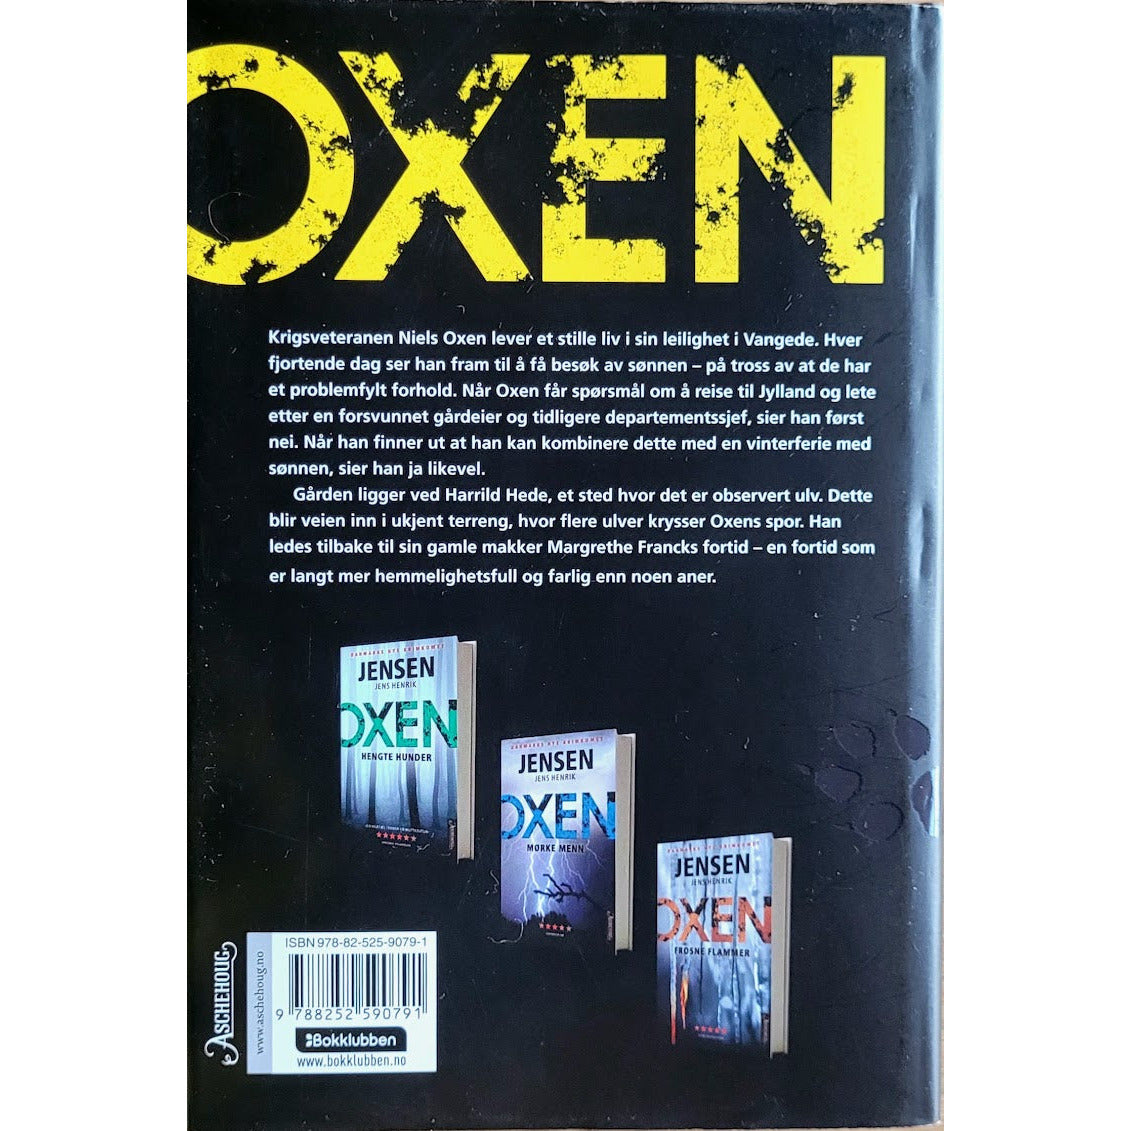 Jensen, Jens Henrik: Lupus - Oxen 4